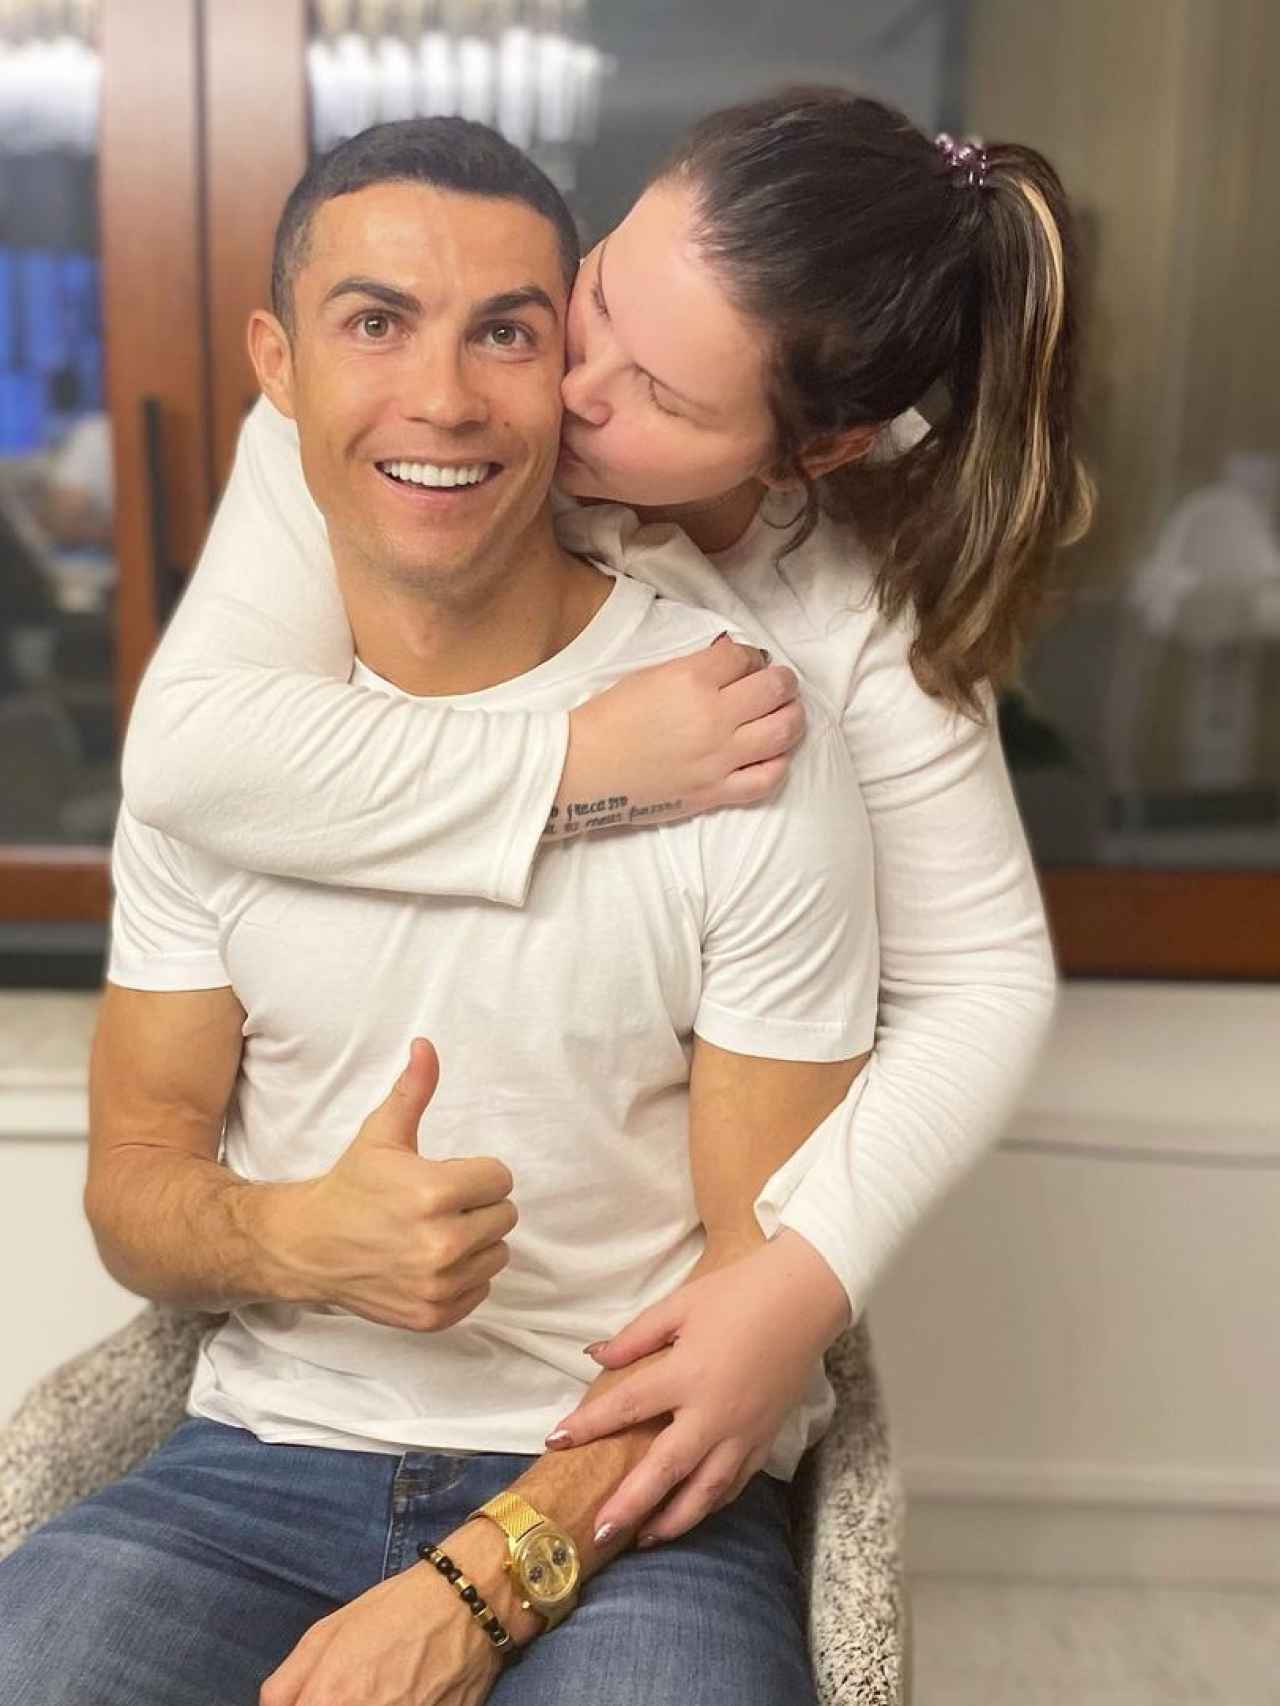 Katia Aveiro y Cristiano Ronaldo en una imagen compartida en redes sociales.